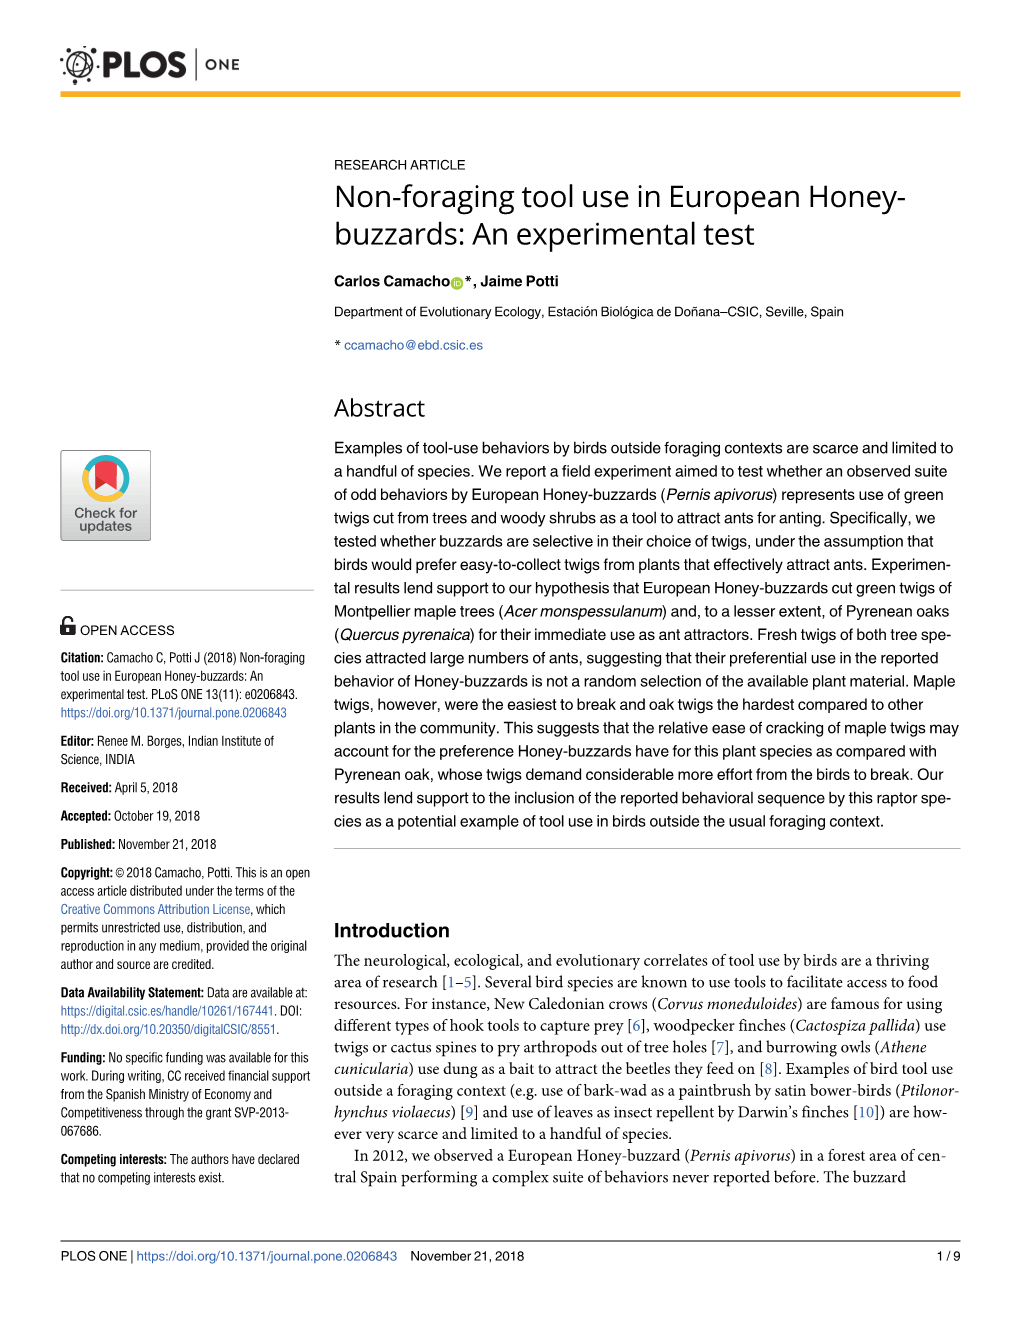 Non-Foraging Tool Use in European Honey-Buzzards